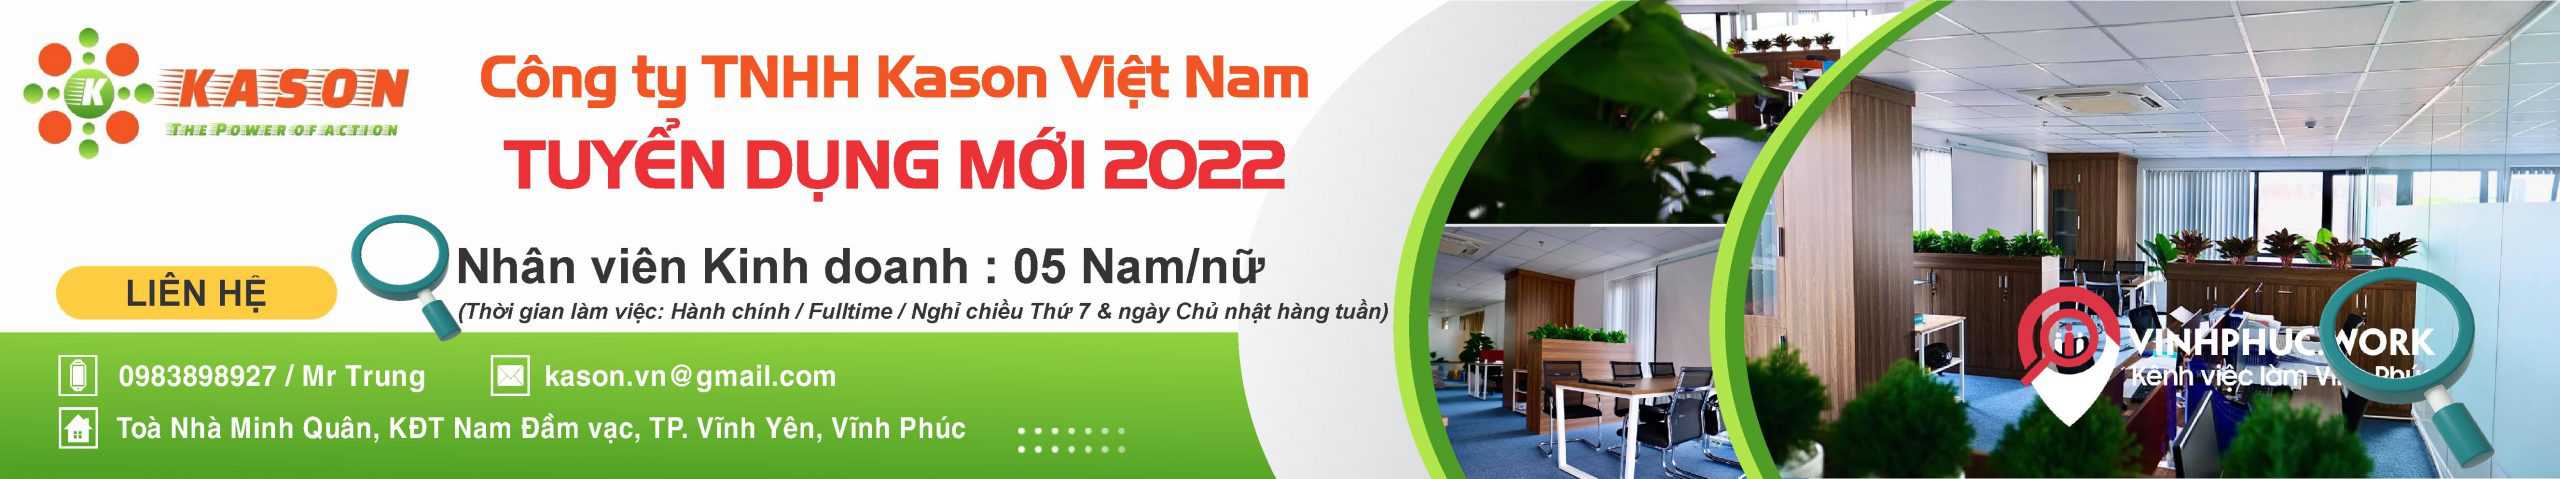 Tuyen Dung T11 T12 2021